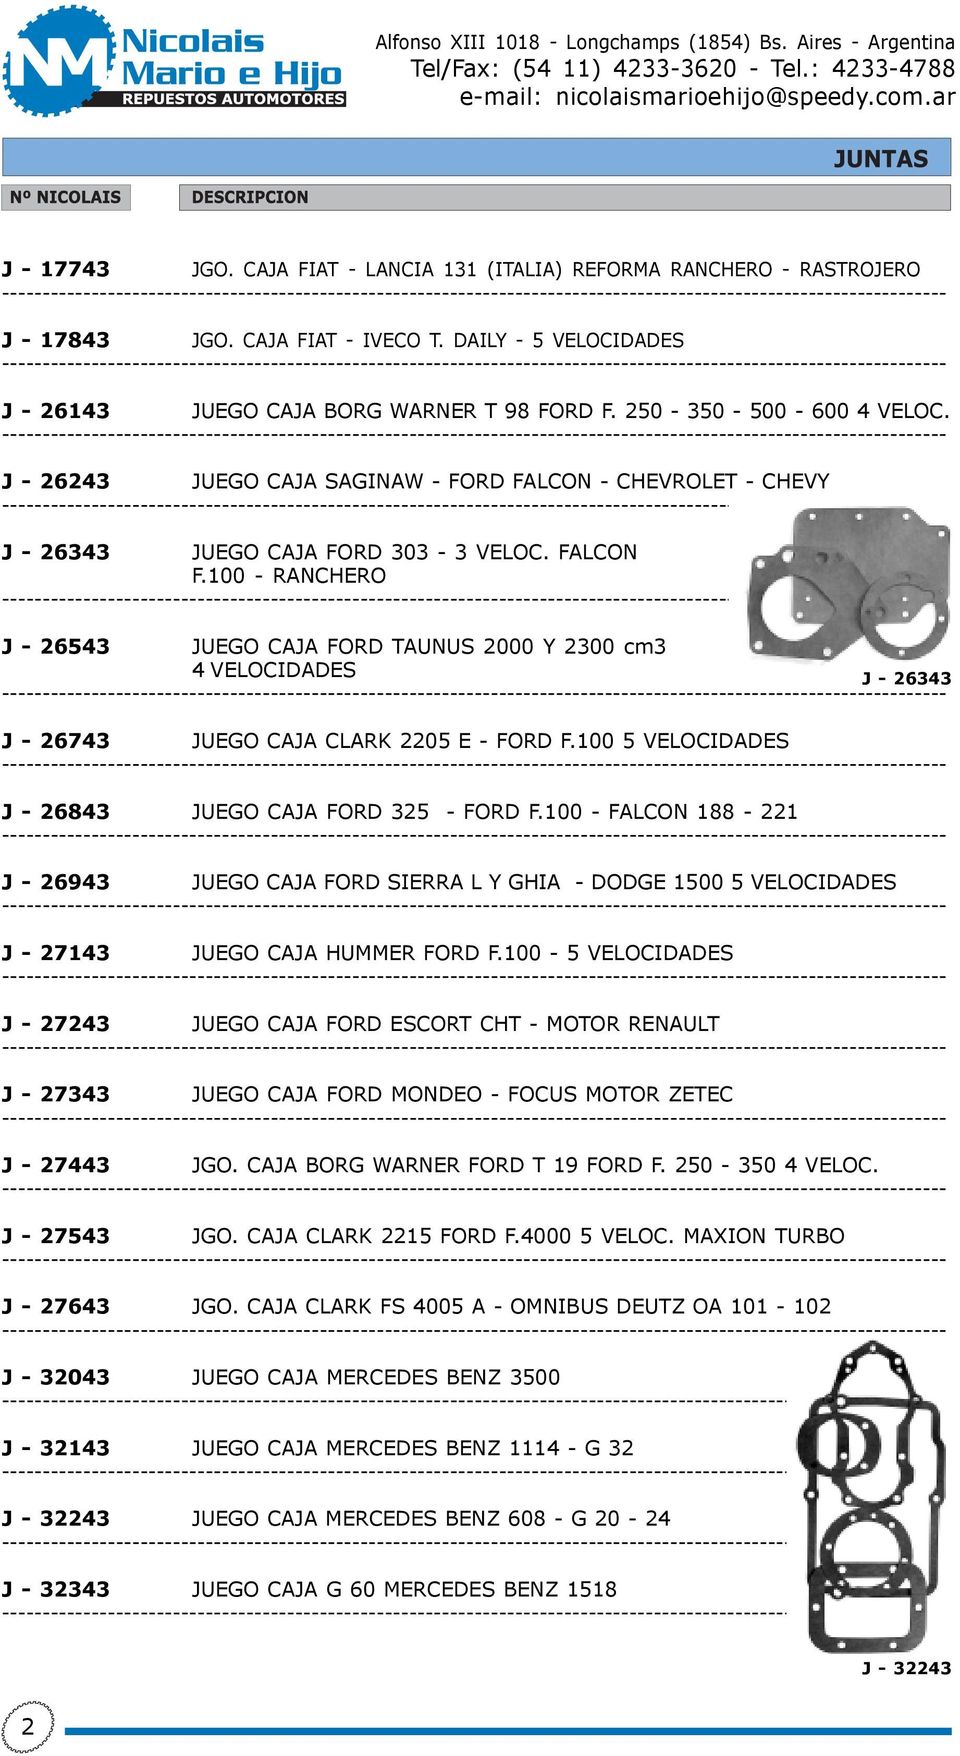 100 - RANCHERO J - 26543 JUEGO CAJA FORD TAUNUS 2000 Y 2300 cm3 4 VELOCIDADES J - 26343 J - 26743 JUEGO CAJA CLARK 2205 E - FORD F.100 5 VELOCIDADES J - 26843 JUEGO CAJA FORD 325 - FORD F.